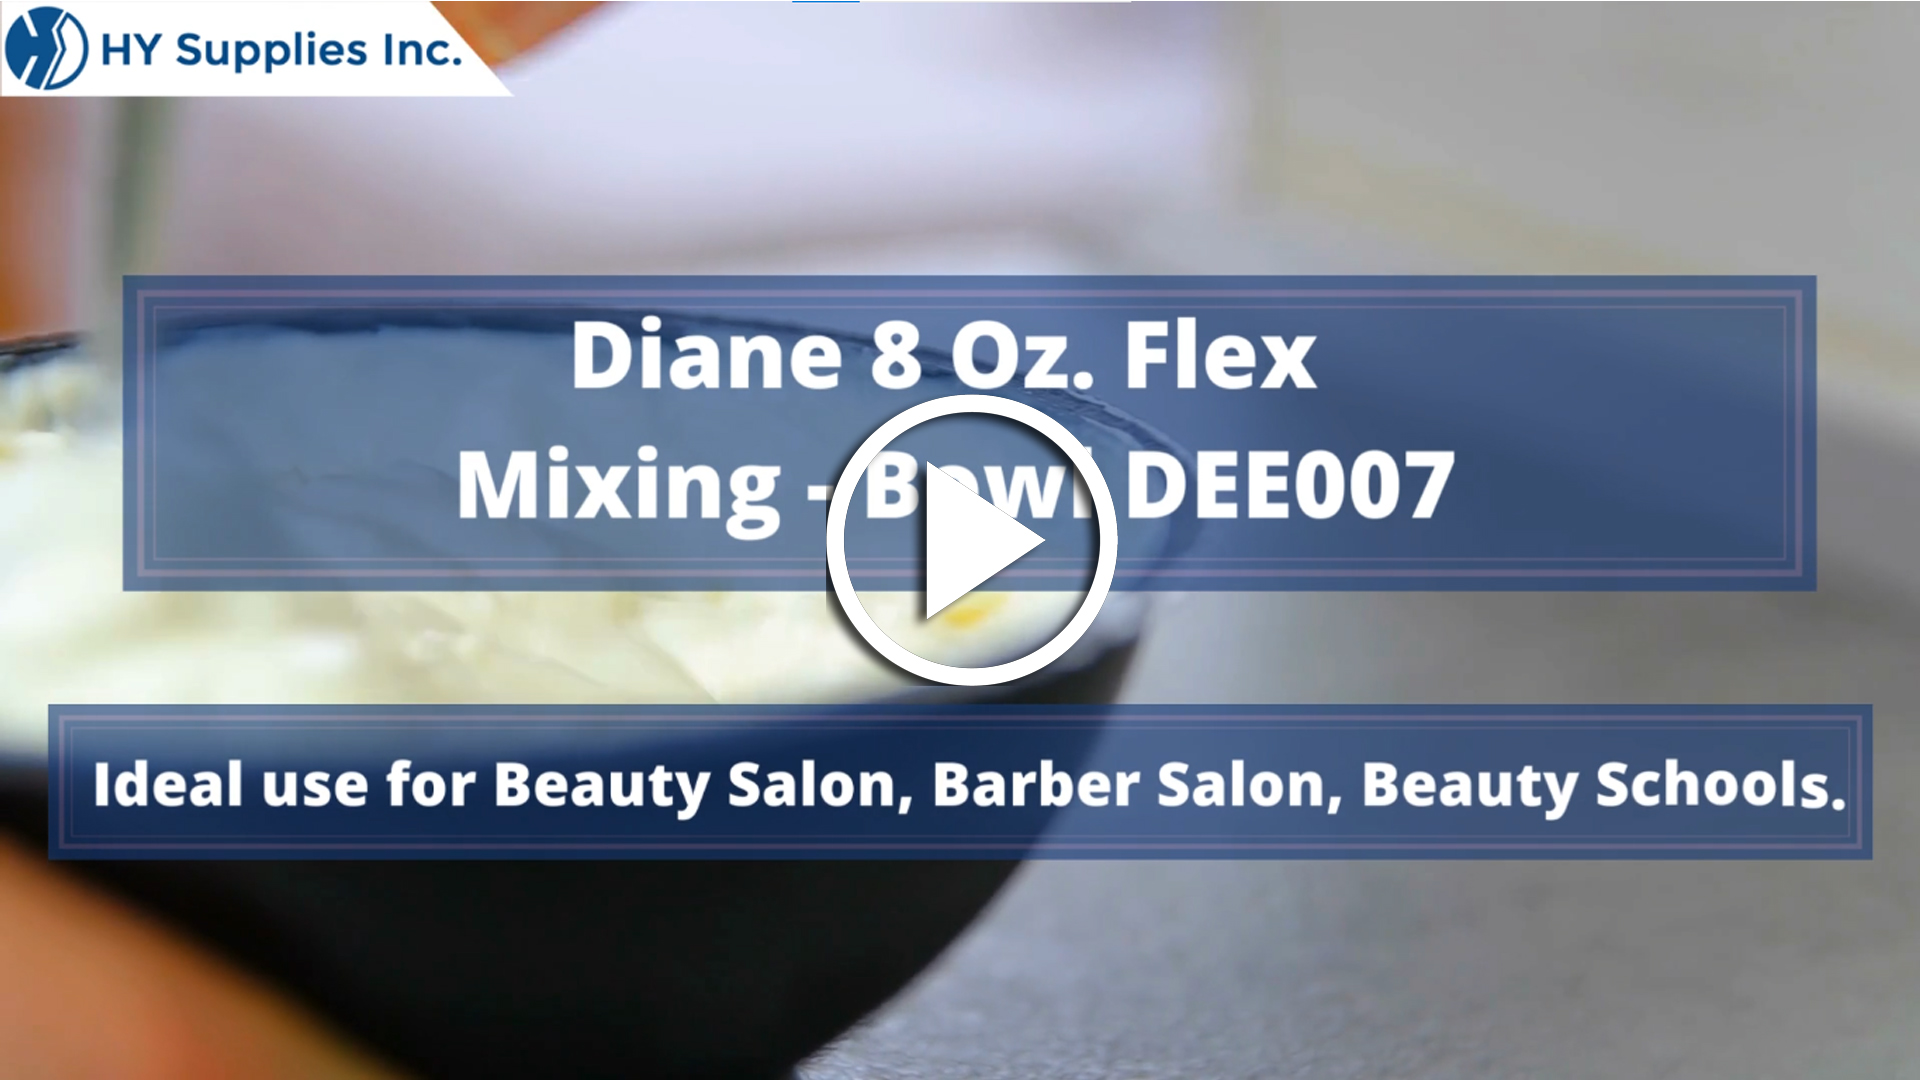 Diane 8 Oz. Flex Mixing Bowl DEE007